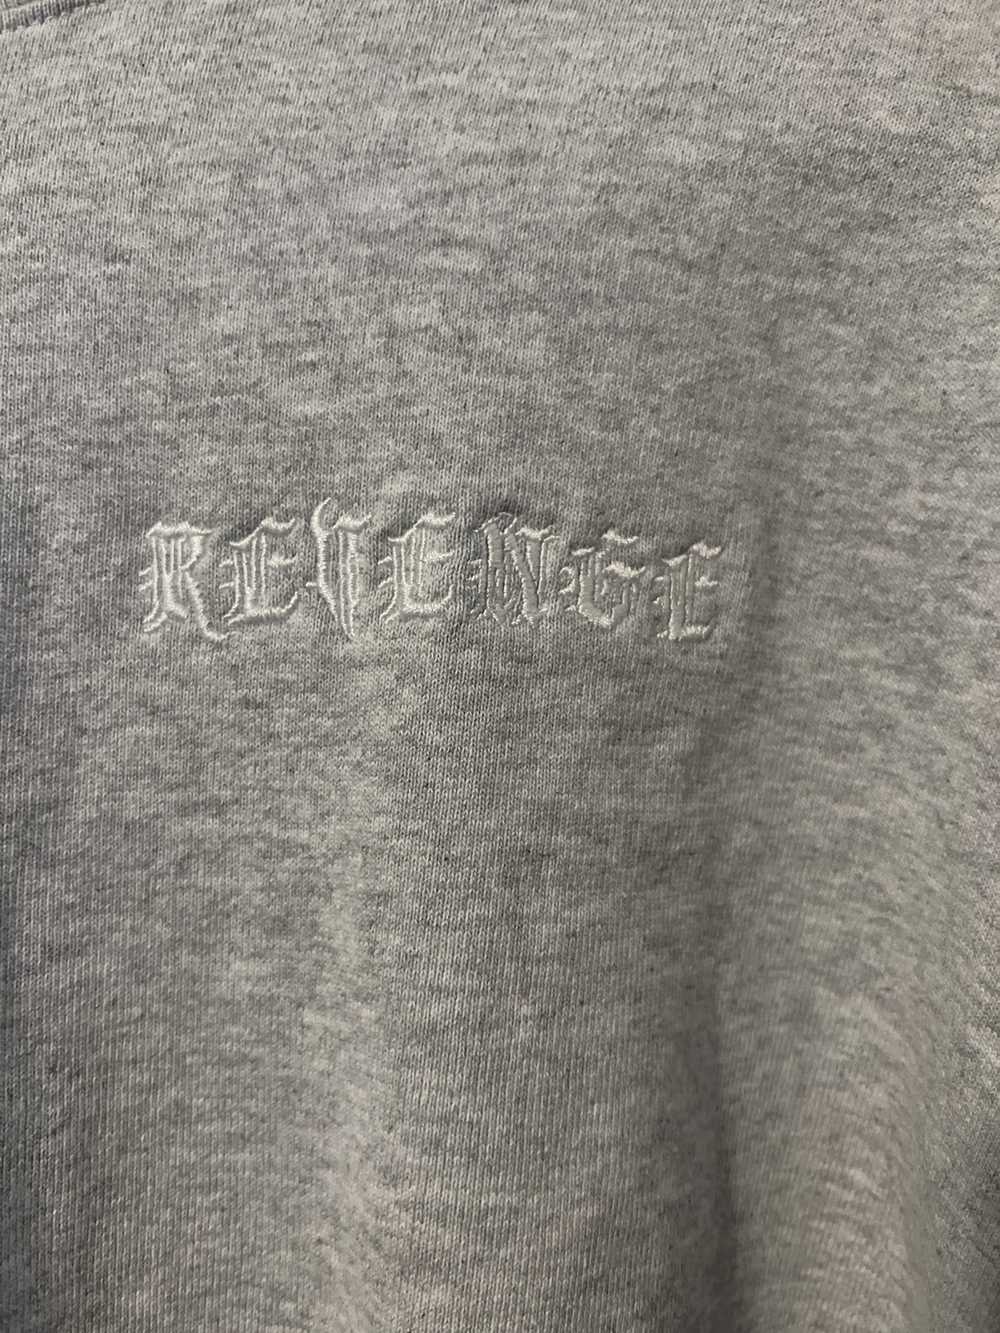 Revenge Revenge angel sweatshirt - image 2